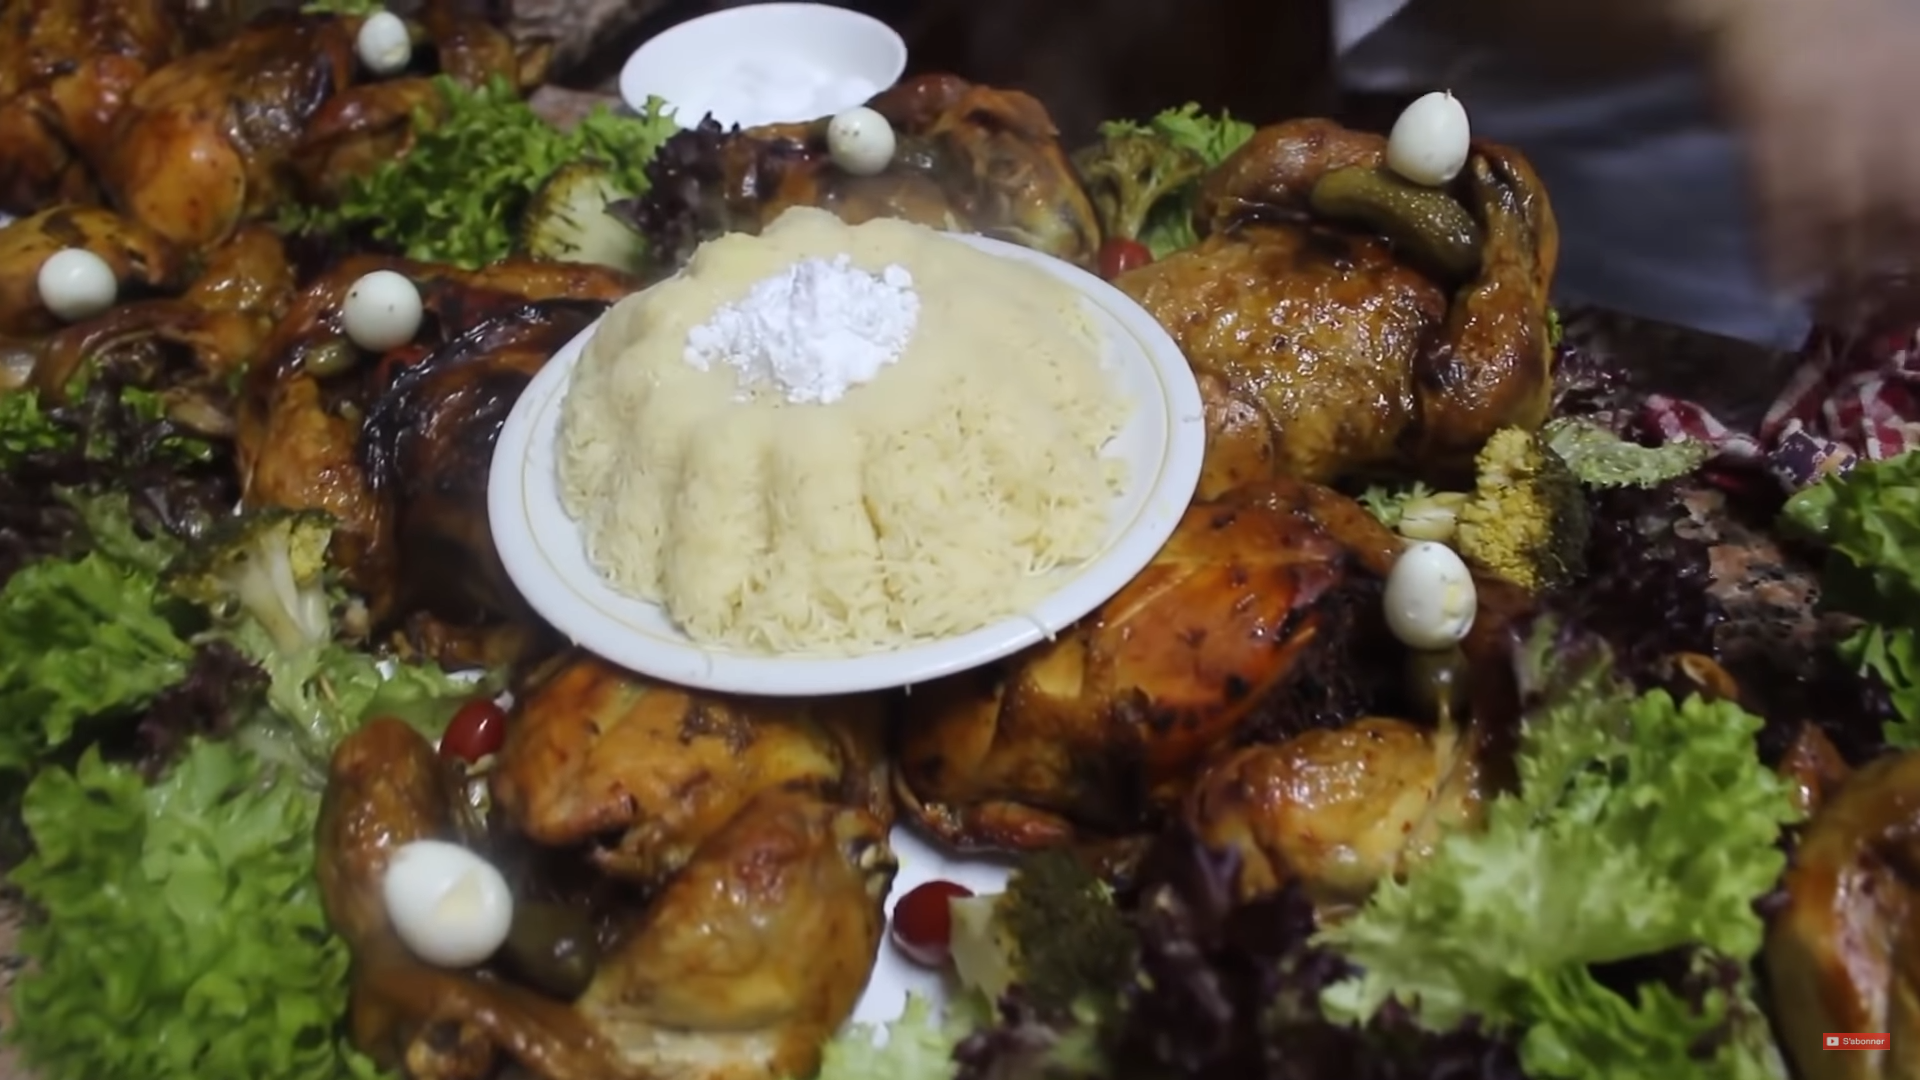 دجاج مشرمل بالزعتر و الأزير للمناسبات من يد الطباخة أمينة